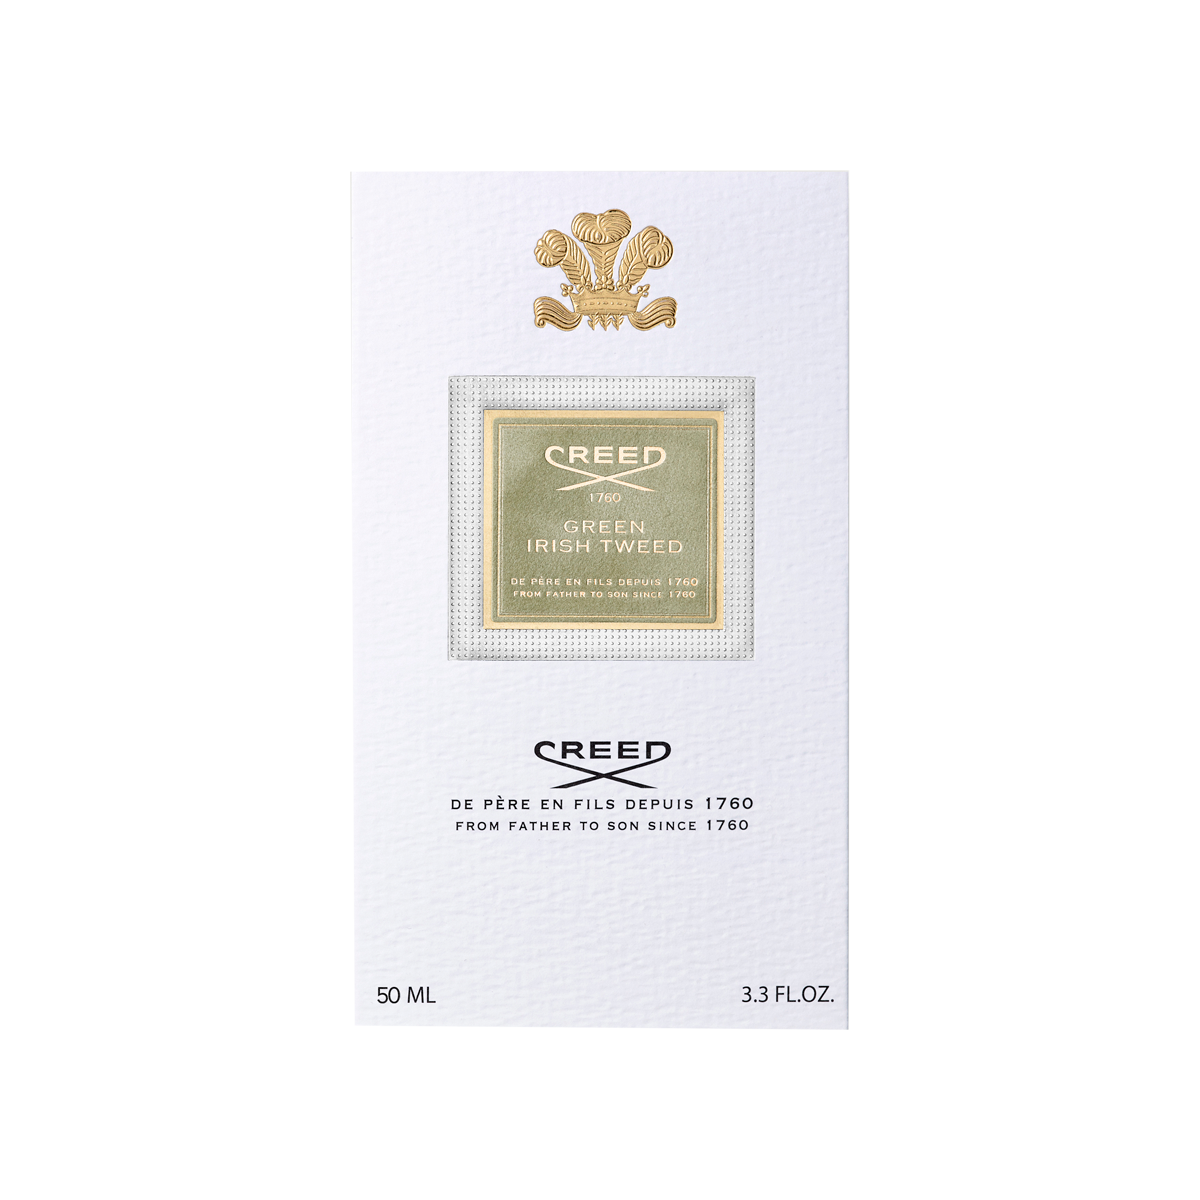 Creed - Green Irish Tweed Eau de Parfum